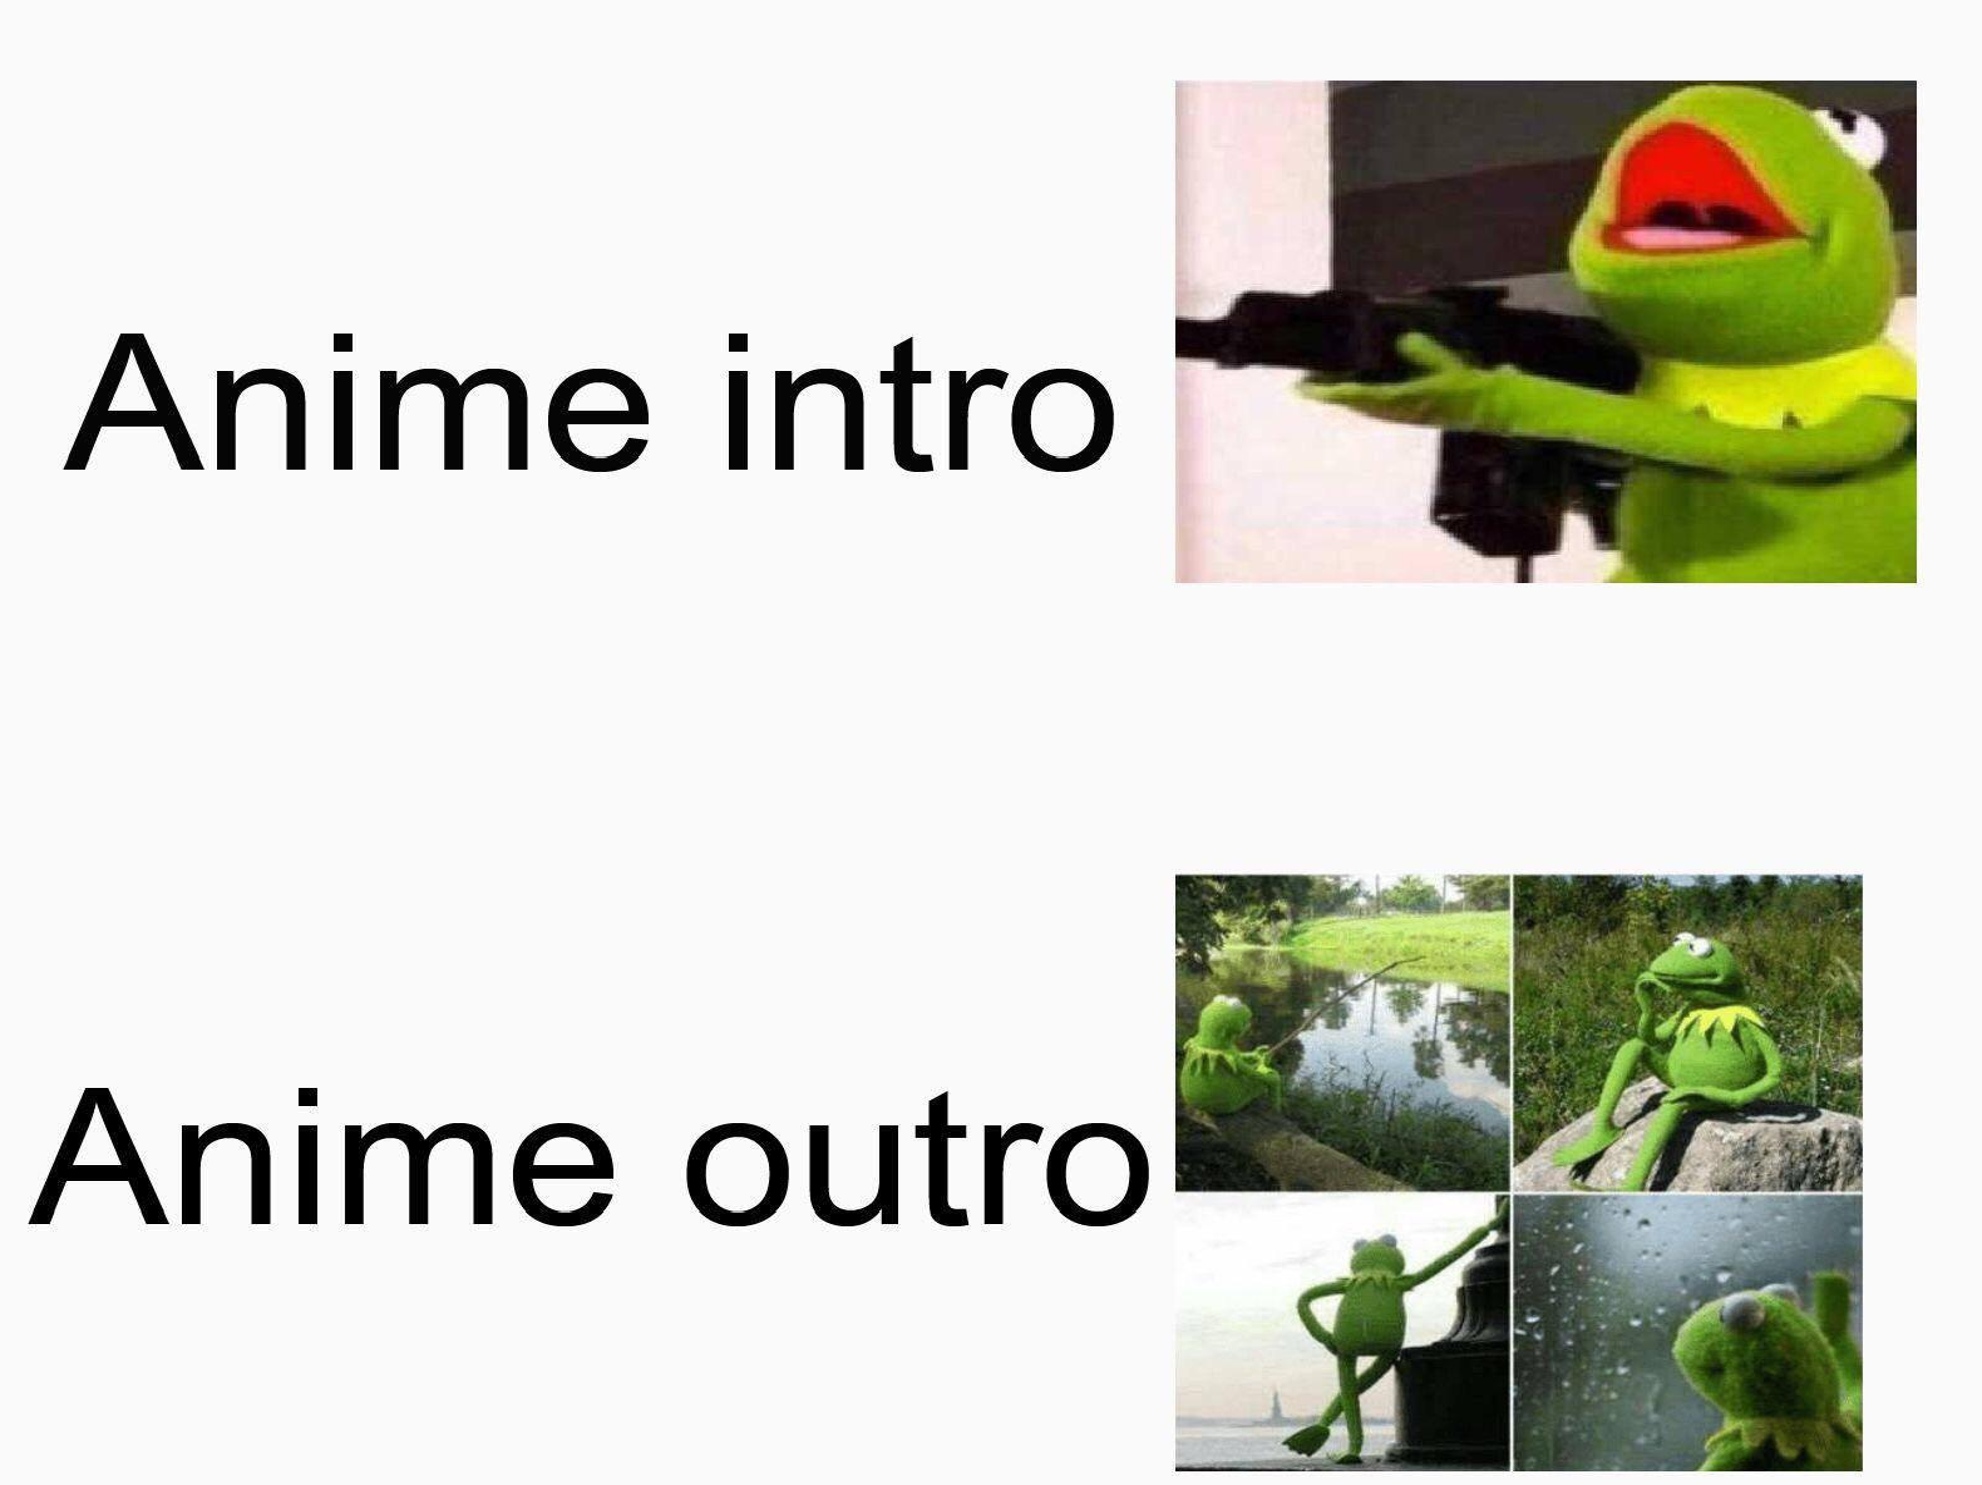 funny friday memes - anime intro vs outro meme - Anime intro Anime outro